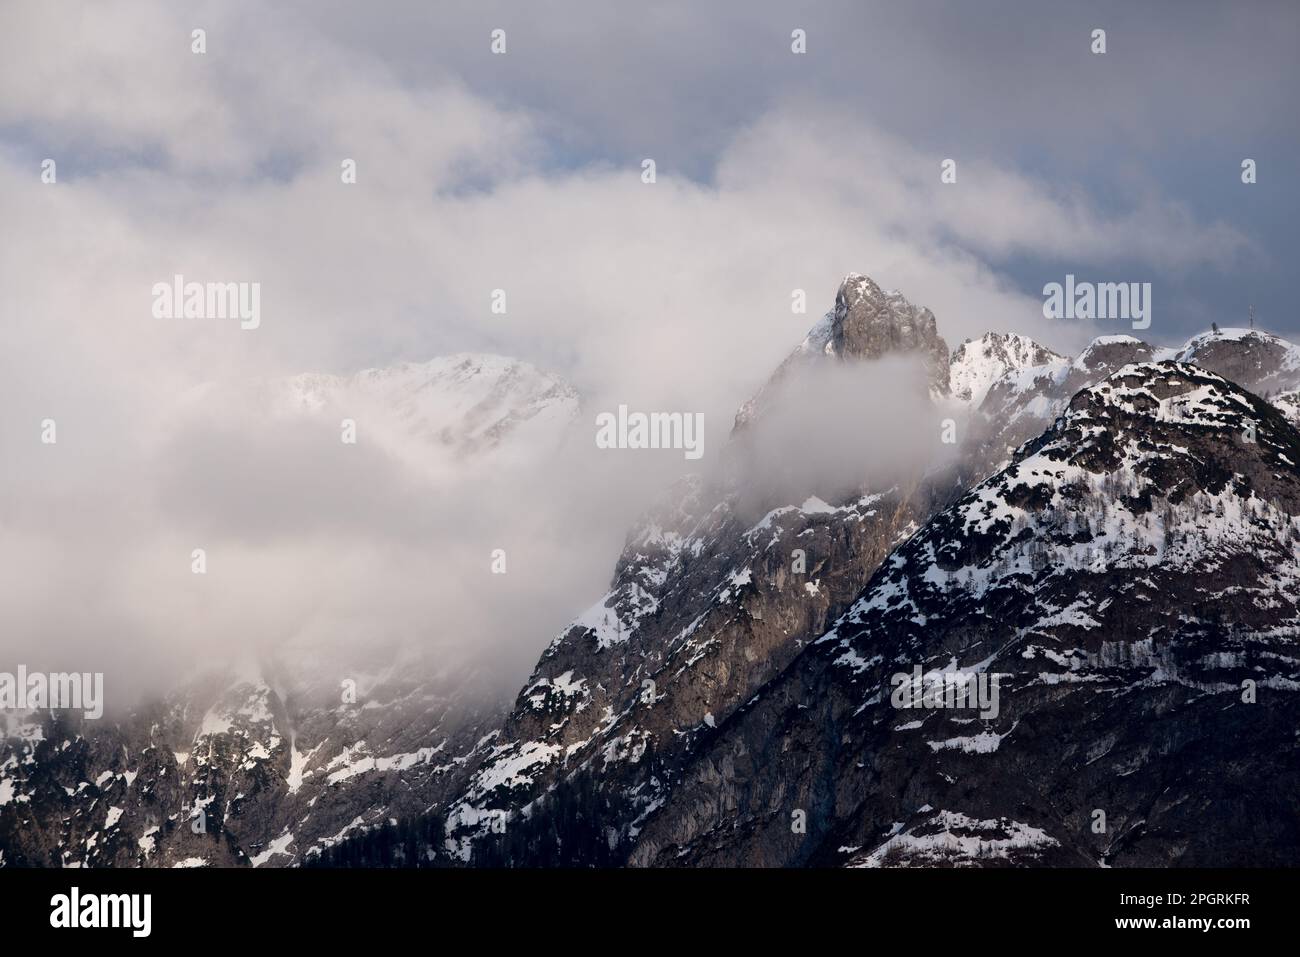 un bello scorcio invernale delle montagne delle dolomiti Foto de stock